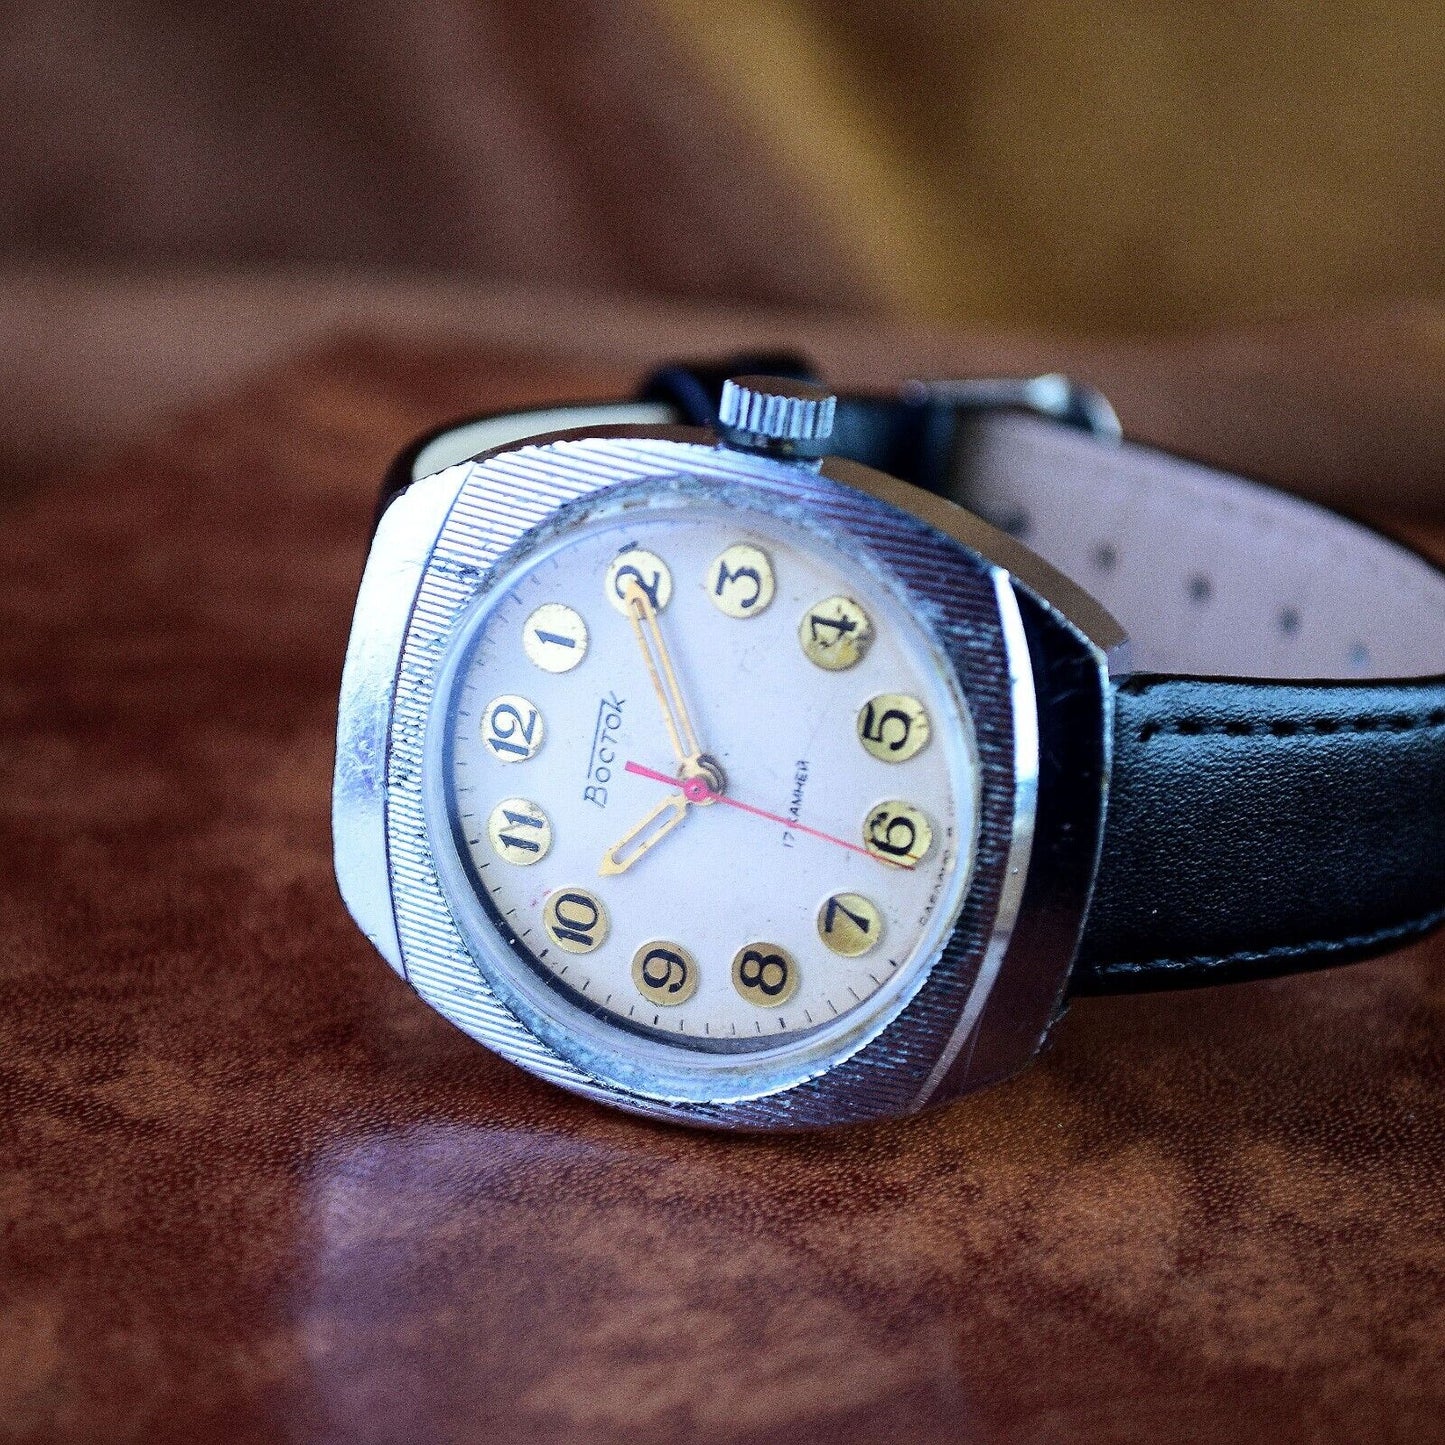 Soviet Wristwatch VOSTOK Mens Mechanical Vintage Watch Beige Dial Montre Homme